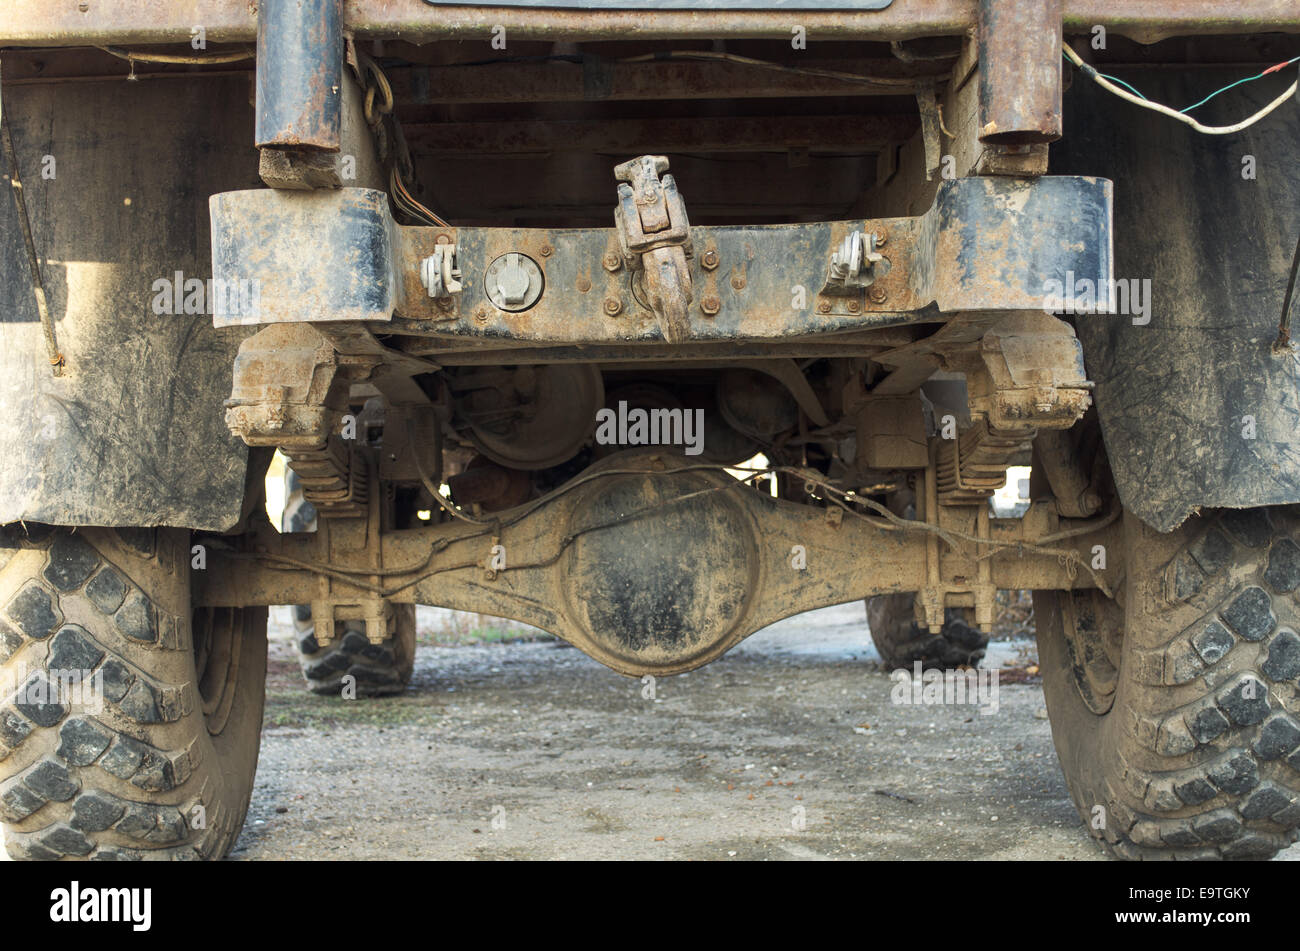 Dettaglio di un vecchio e sporco camion militare Foto Stock